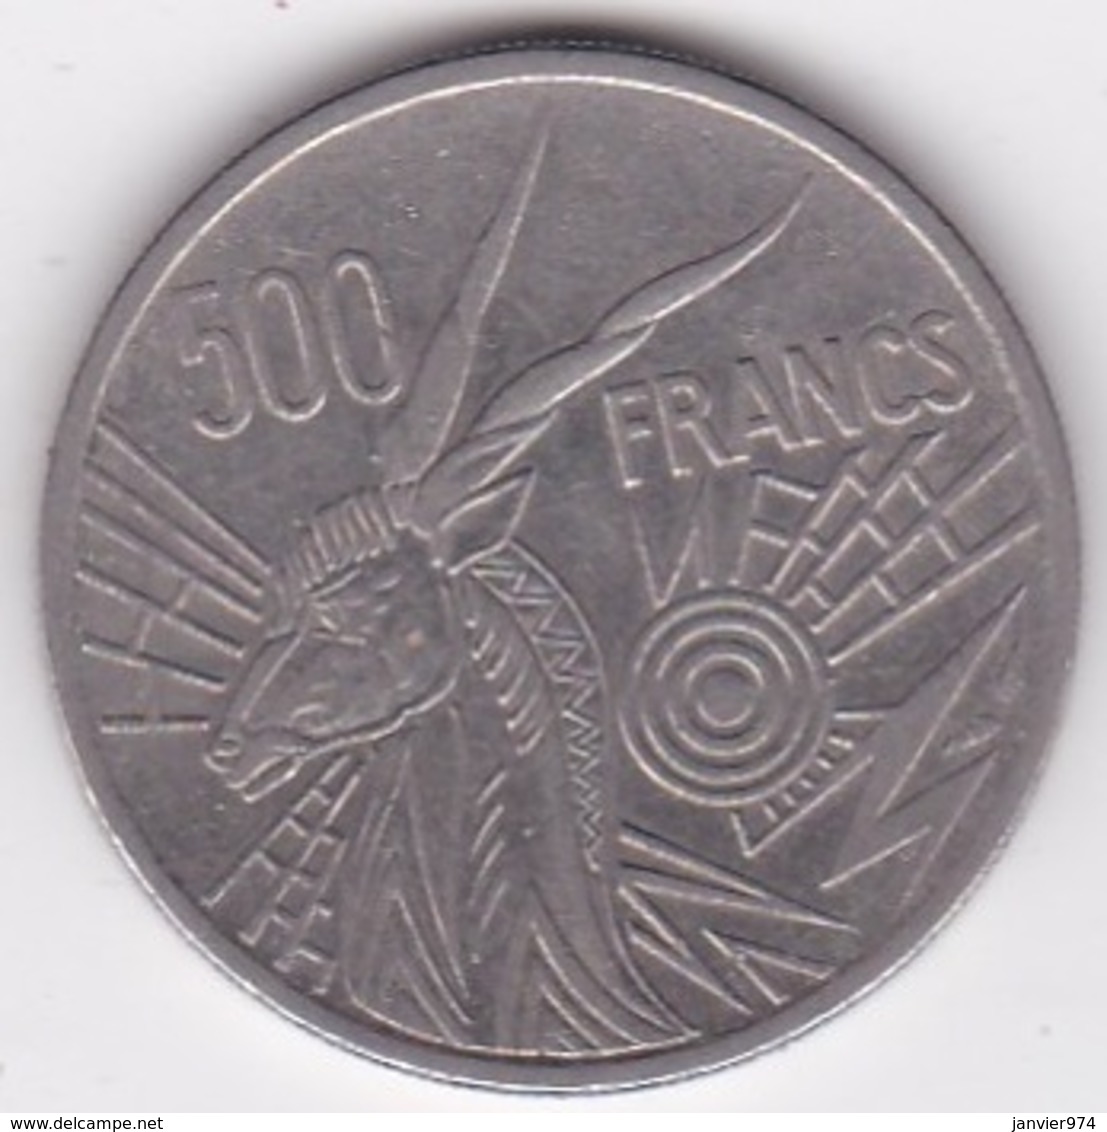 Banque Des Etats De L'Afrique Centrale. 500 Francs 1976 B Republique Centrafricaine - Centraal-Afrikaanse Republiek